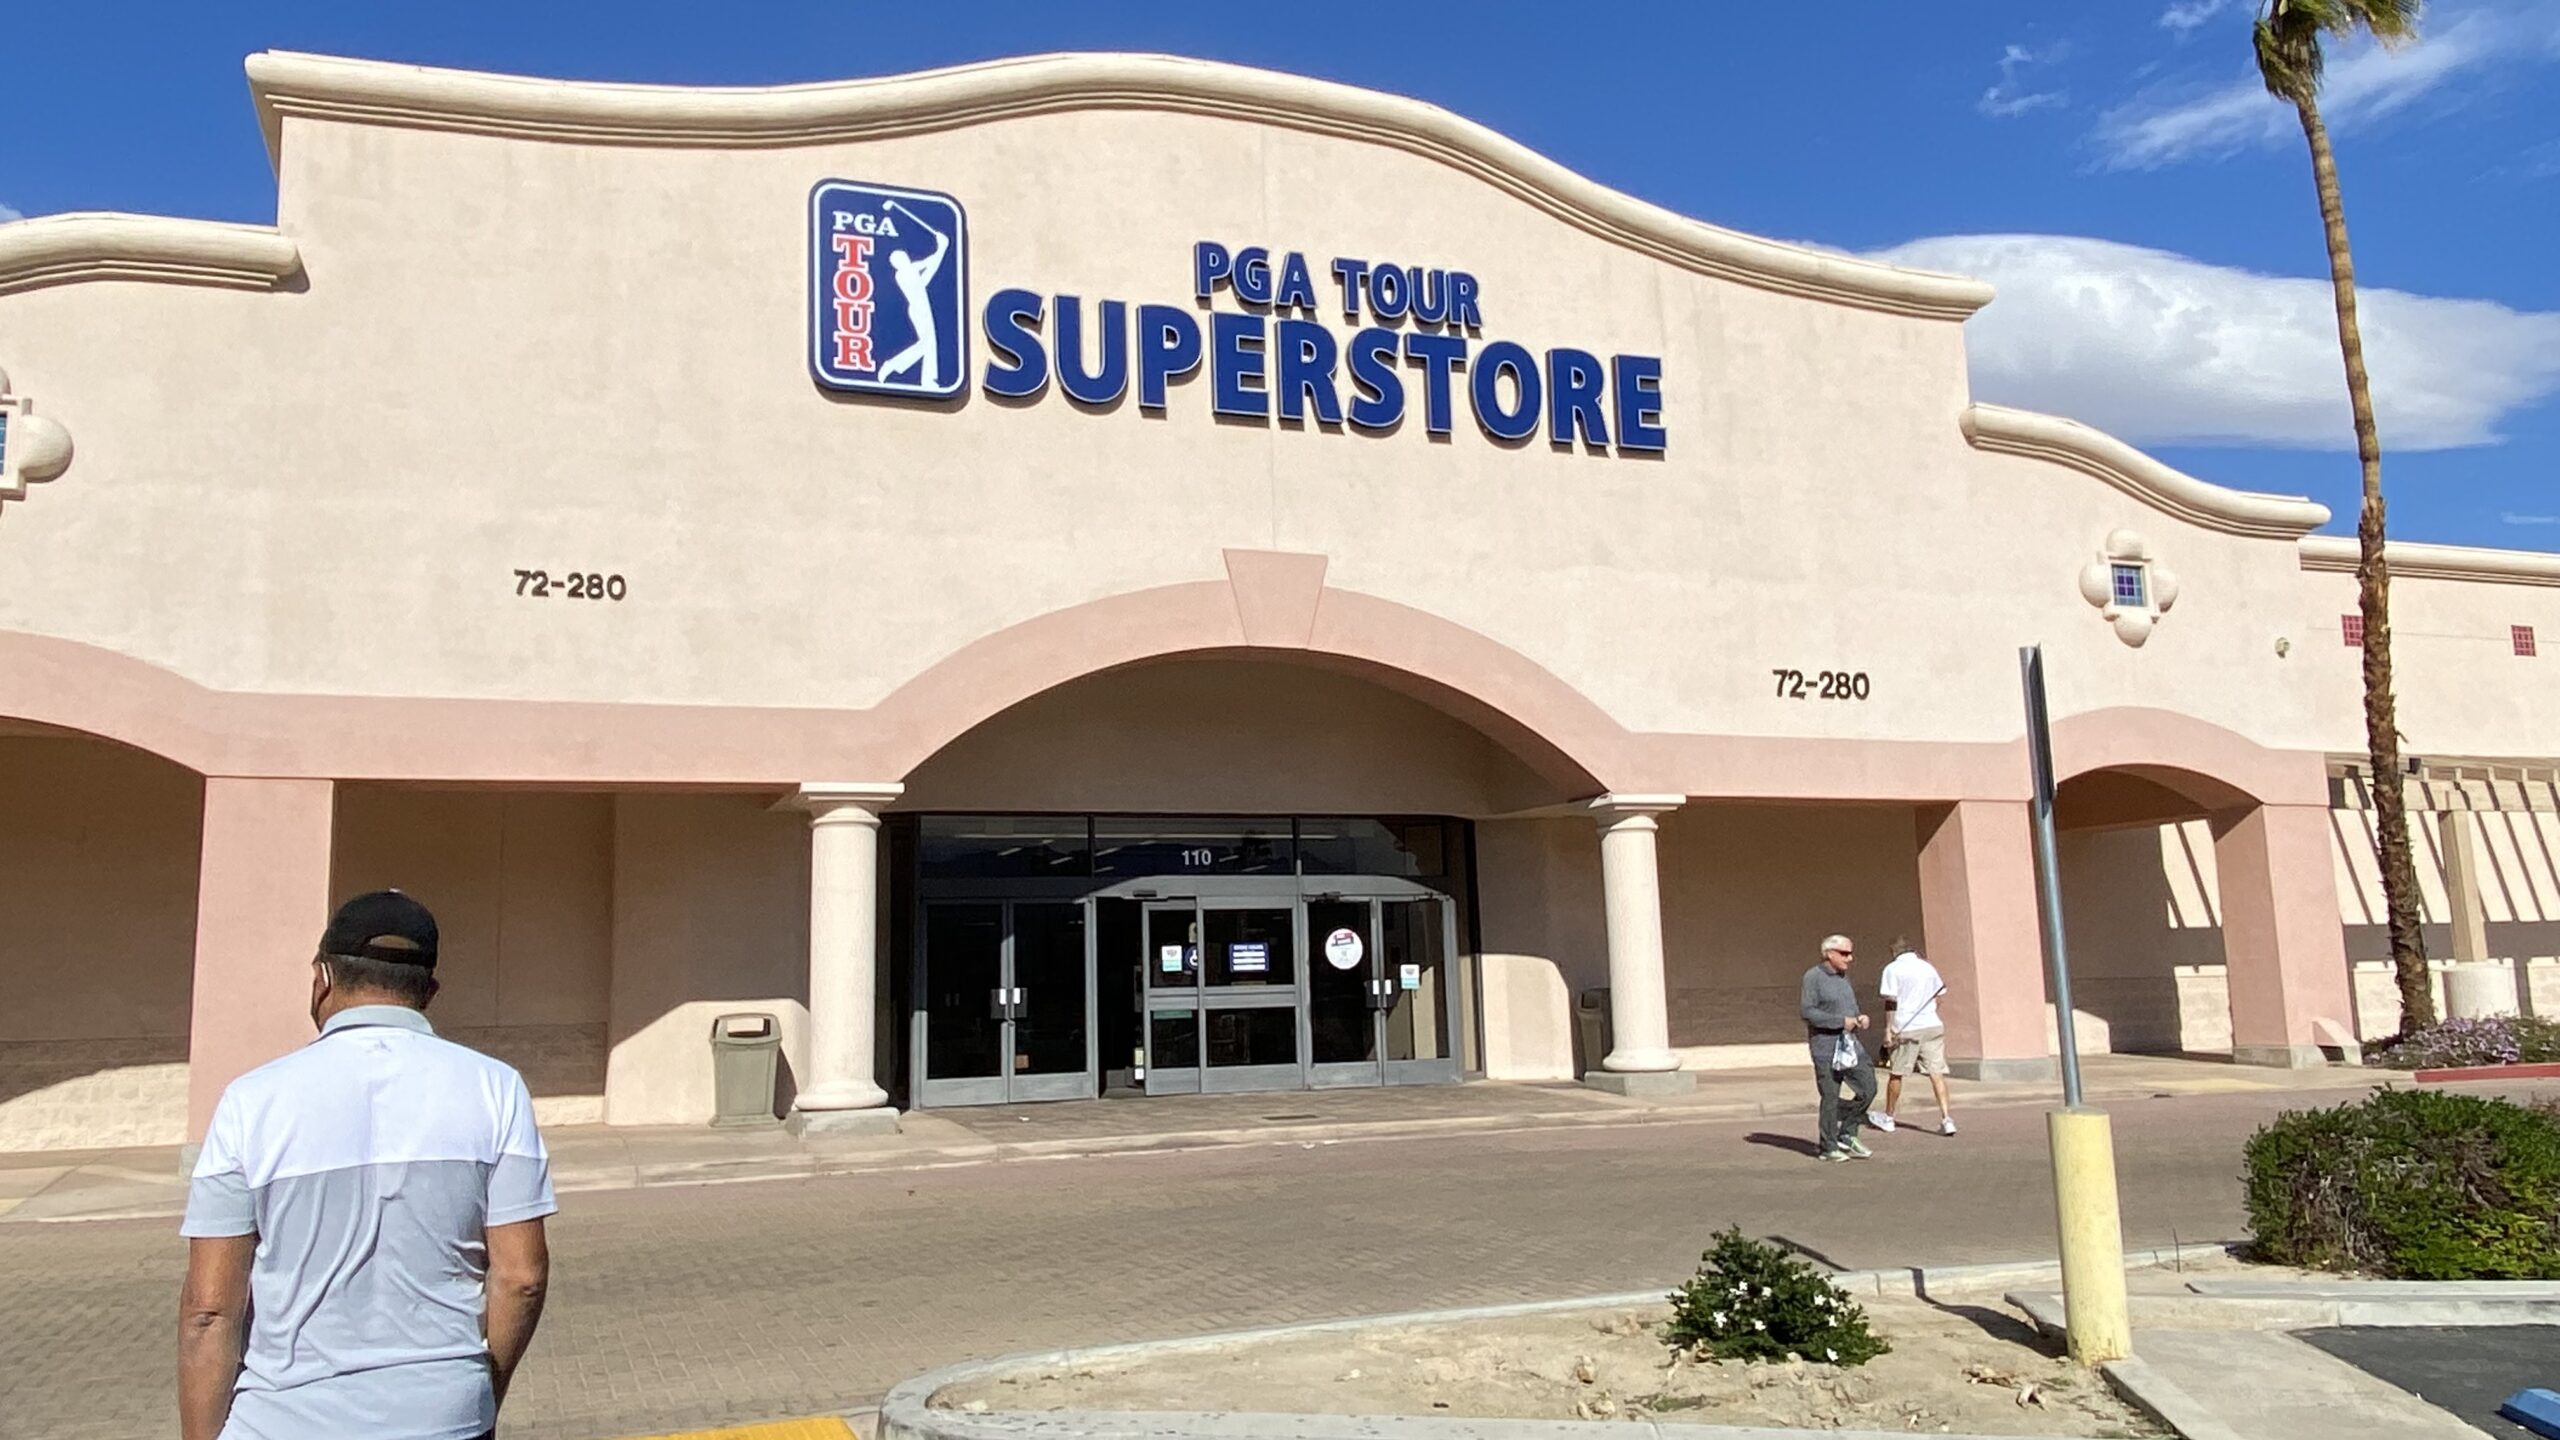 PGA tour store